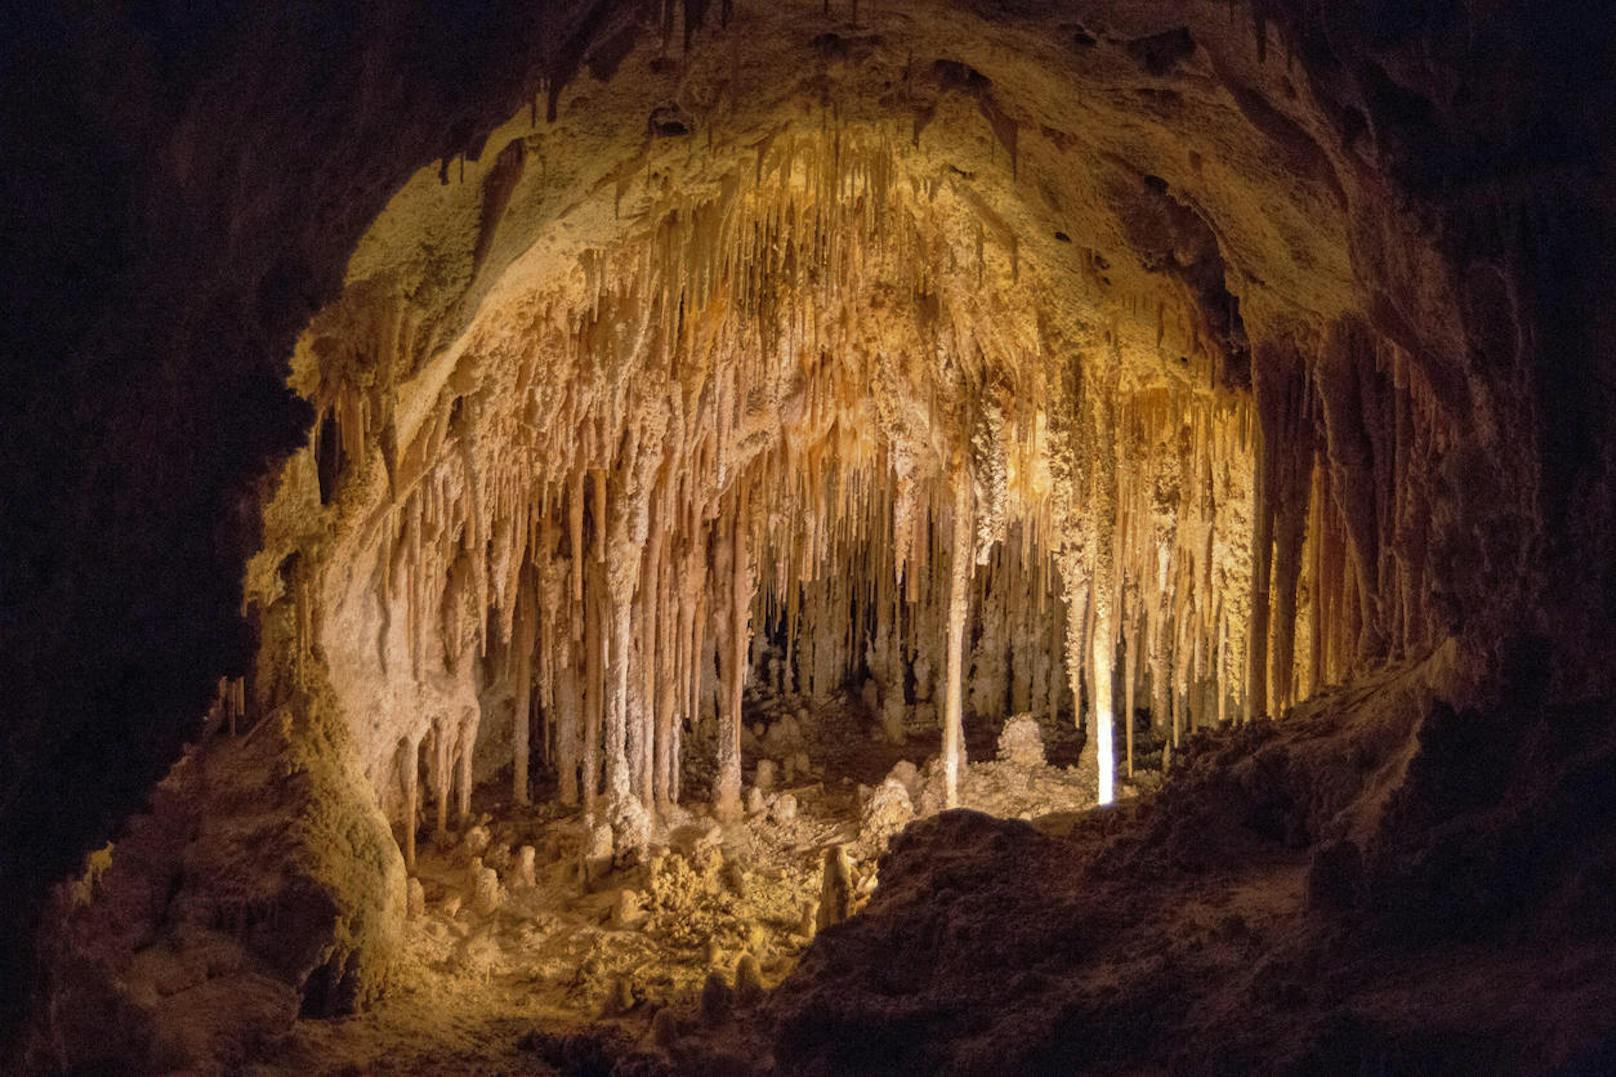 <b>Carlsbad Caverns - New Mexico, USA</b>
Beinahe wie von Menschenhand geschaffen, wirken die faszinierenden Kalksteinsäulen in den Carlsbad Caverns im US-Bundesstaat New Mexico. Zwischen ihnen: unglaublich schöne Stalaktiten.